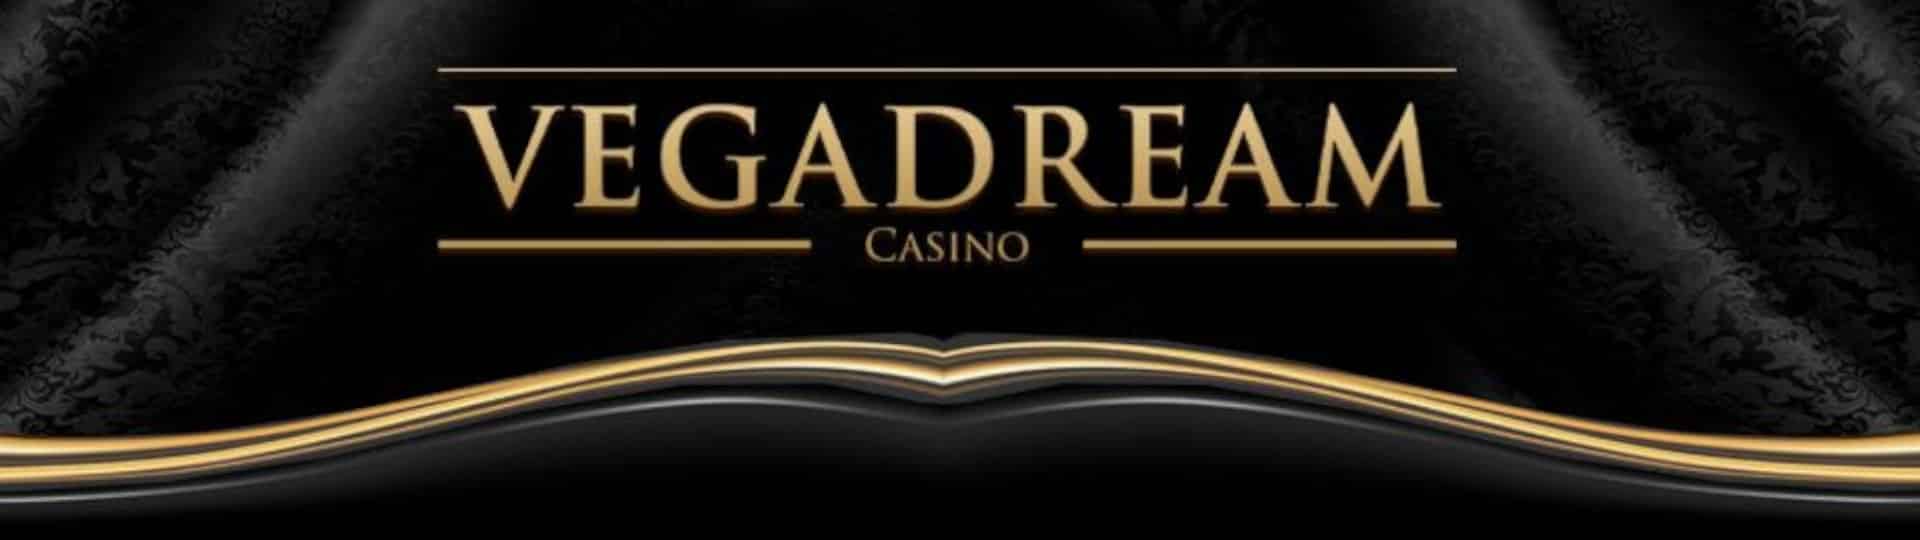 VegaDream Bonus Casino Review